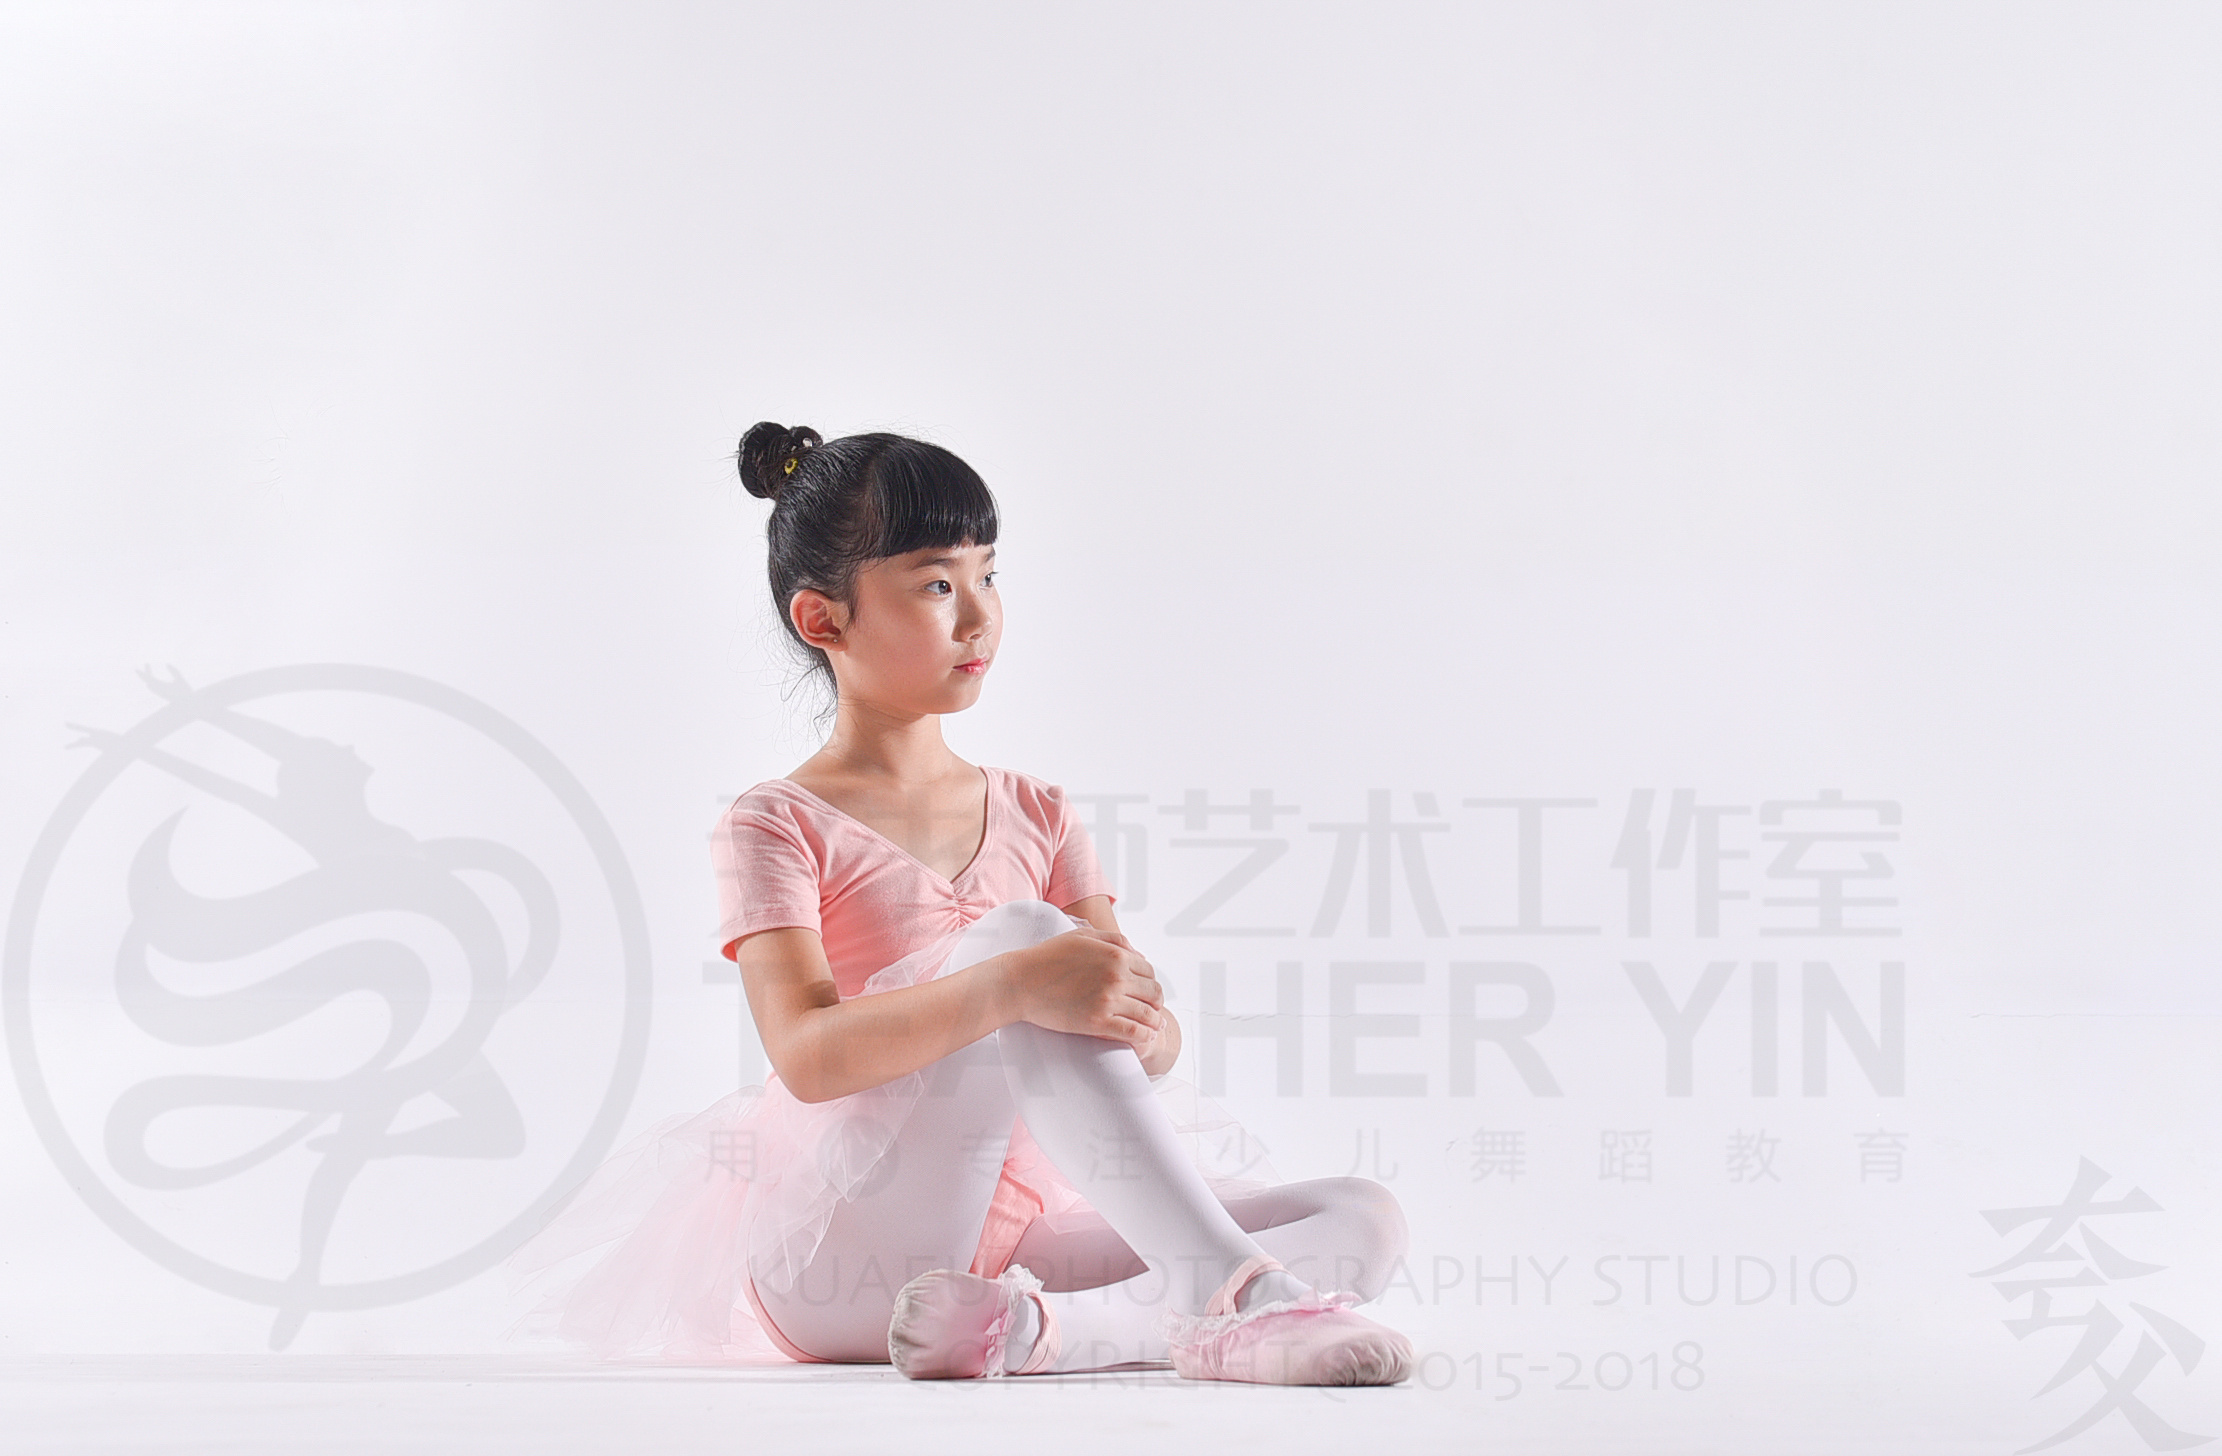 尹梦瑶尹老师艺术工作室少儿舞蹈教育培训学员大照